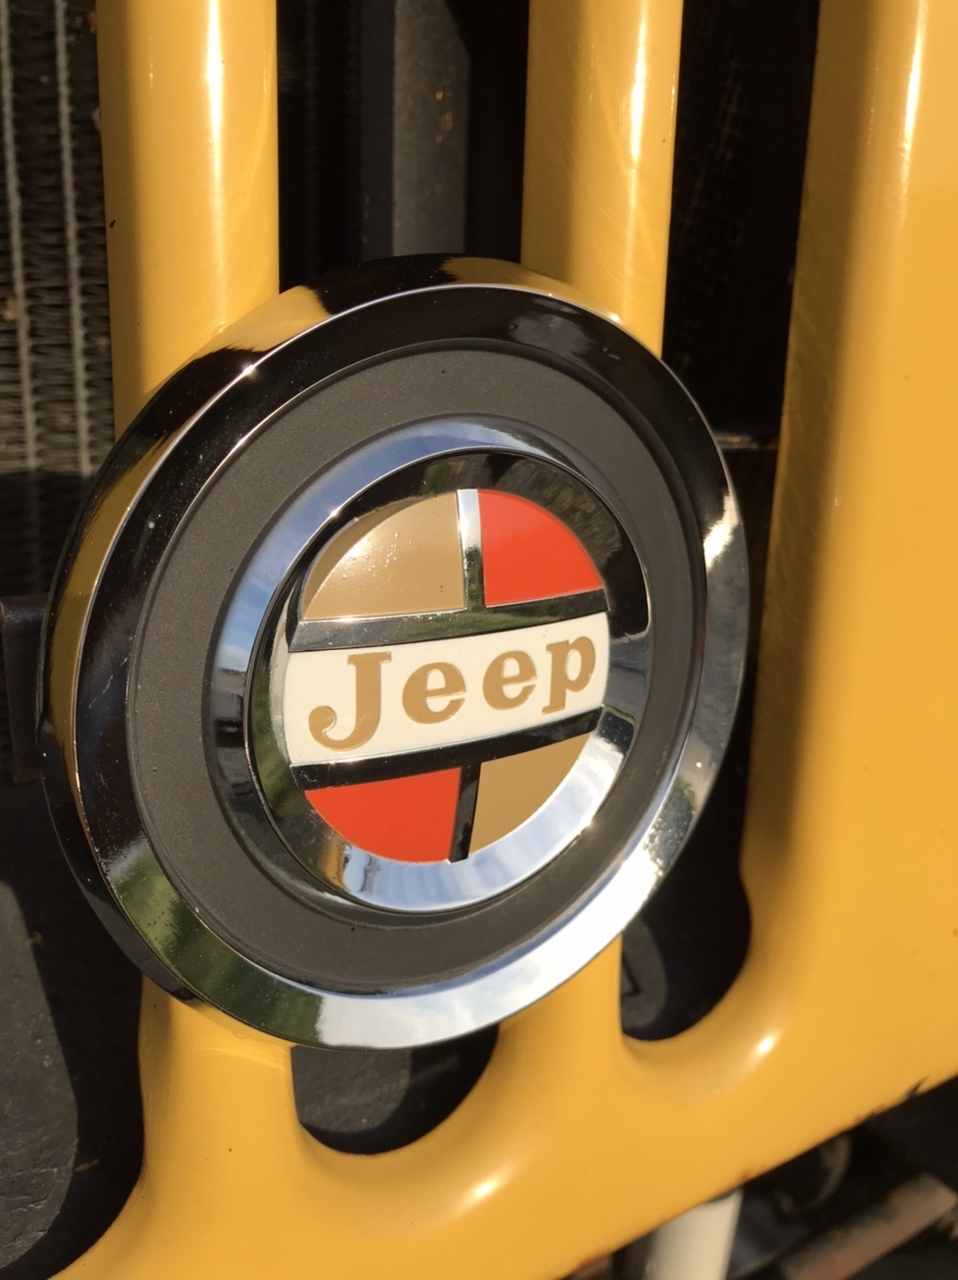 Jeep grill emblem